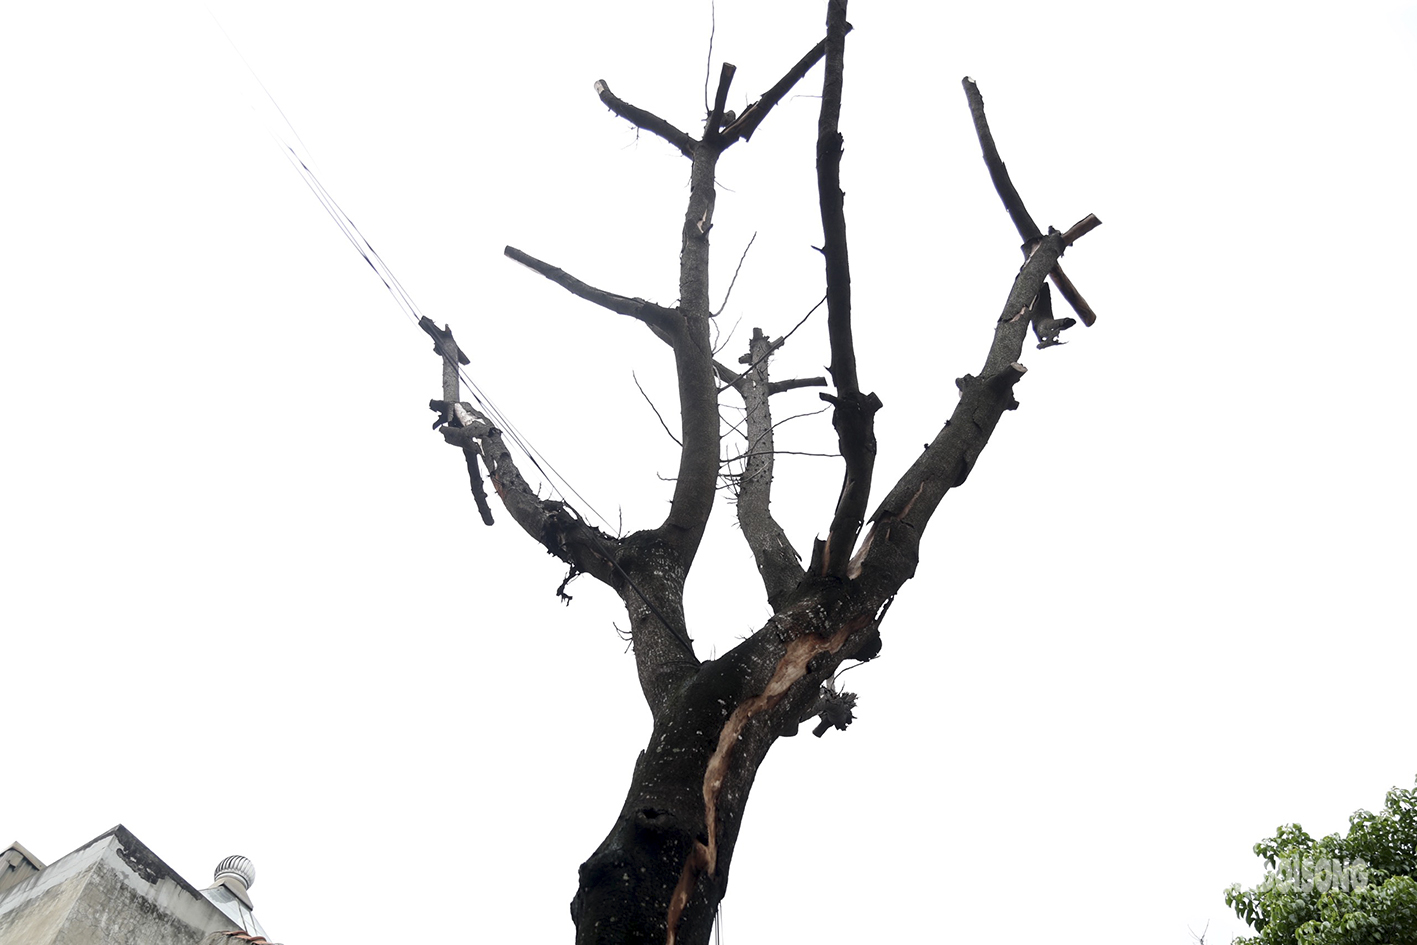 Nhiều cây cổ thụ ở Hà Nội chết khô, tiềm ẩn đổ gãy trong mùa mưa bão - Ảnh 10.